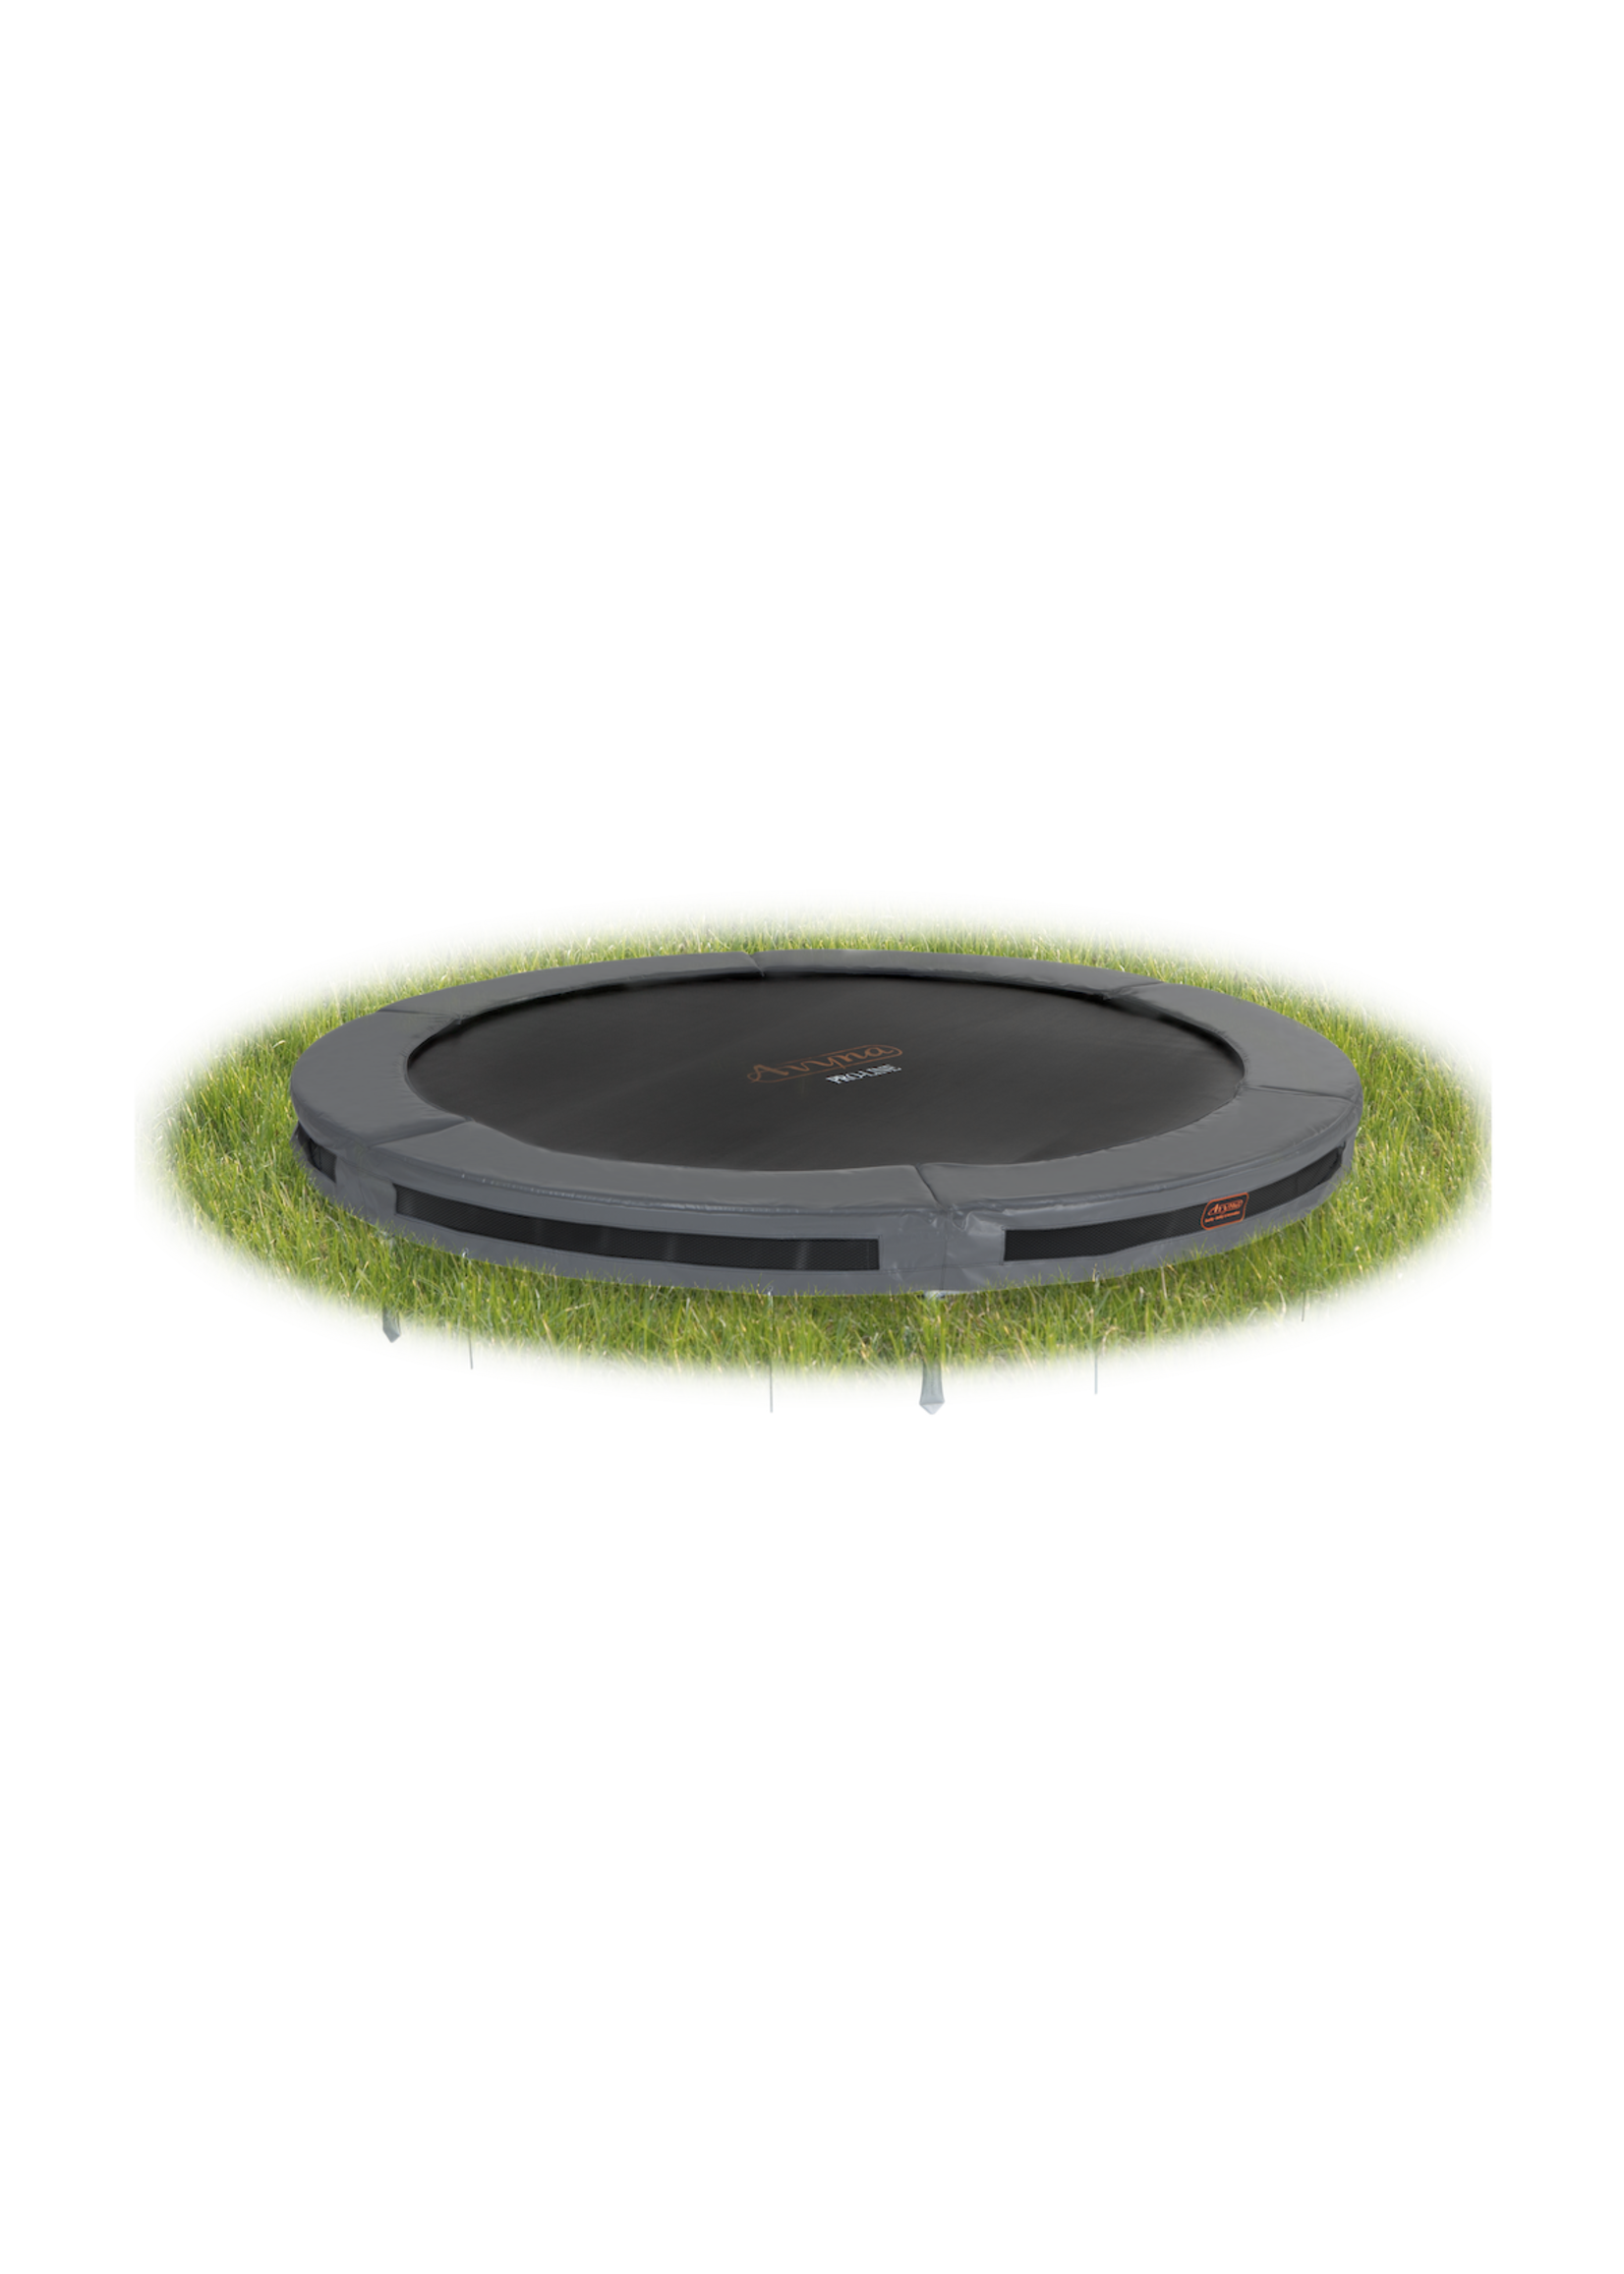 Avyna De ideale ronde trampoline voor in de grond, Inground : de Avyna Pro-Line van ‚àö√≤ 305 cm